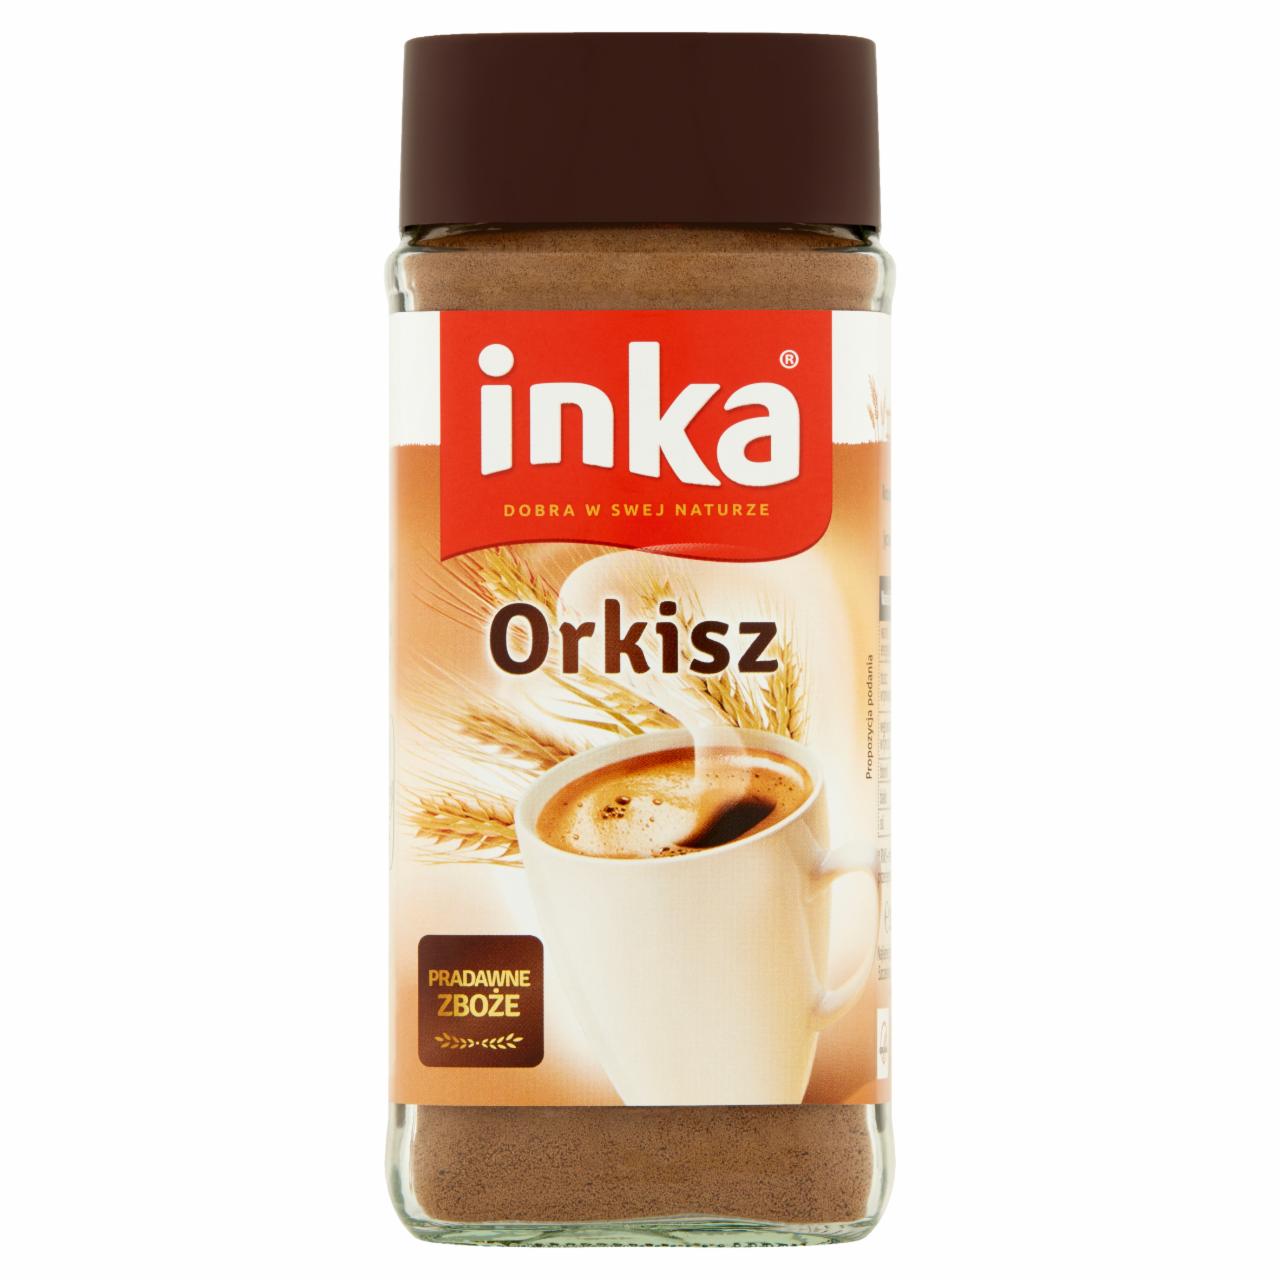 Zdjęcia - Inka Rozpuszczalna kawa zbożowa orkiszowa 100 g